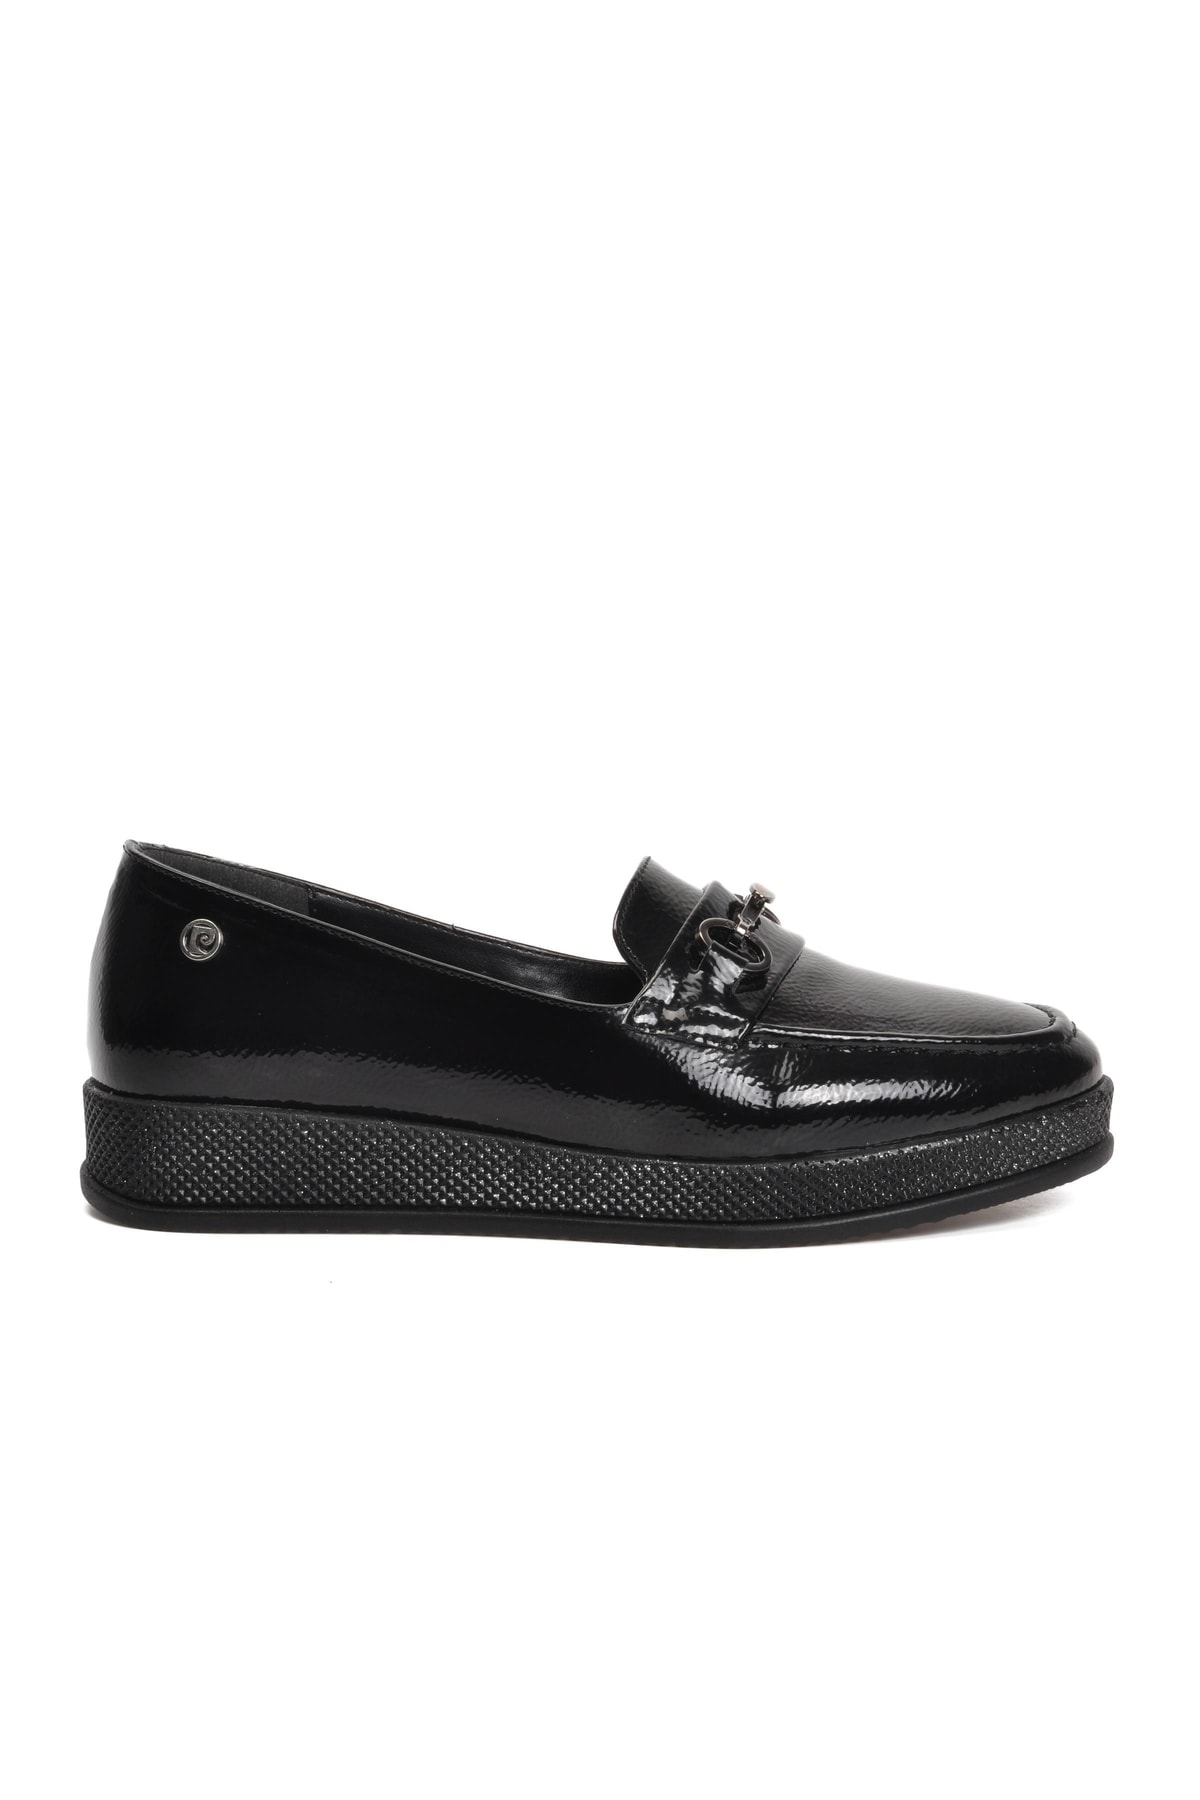 Pierre Cardin Pc-52341 Siyah Kırışık Kadın Casual Ayakkabı